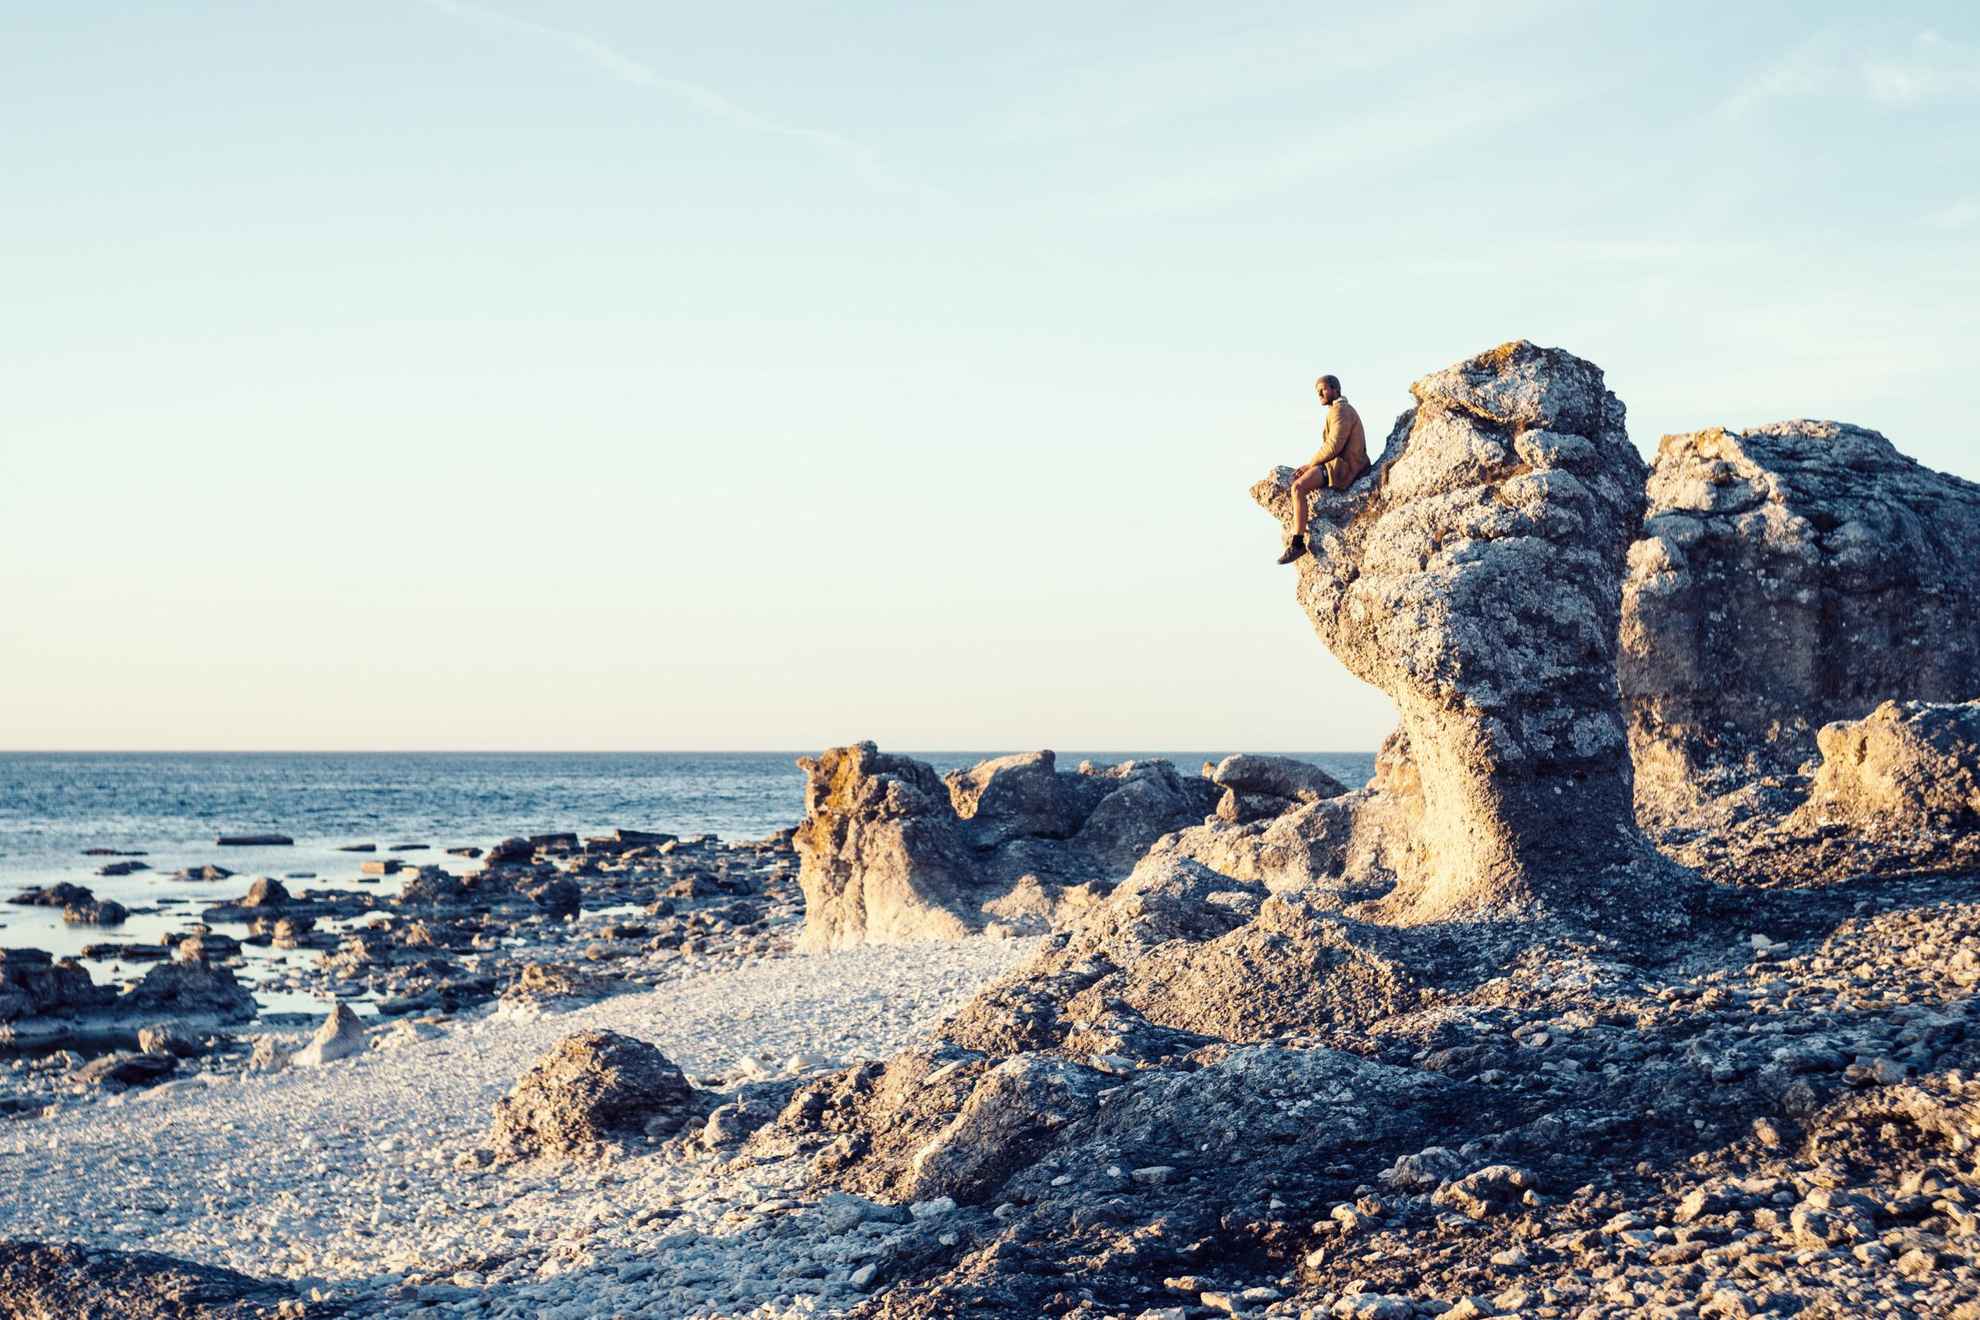 Zeerotsen met de zee op de achtergrond. Een persoon zit op een rots.